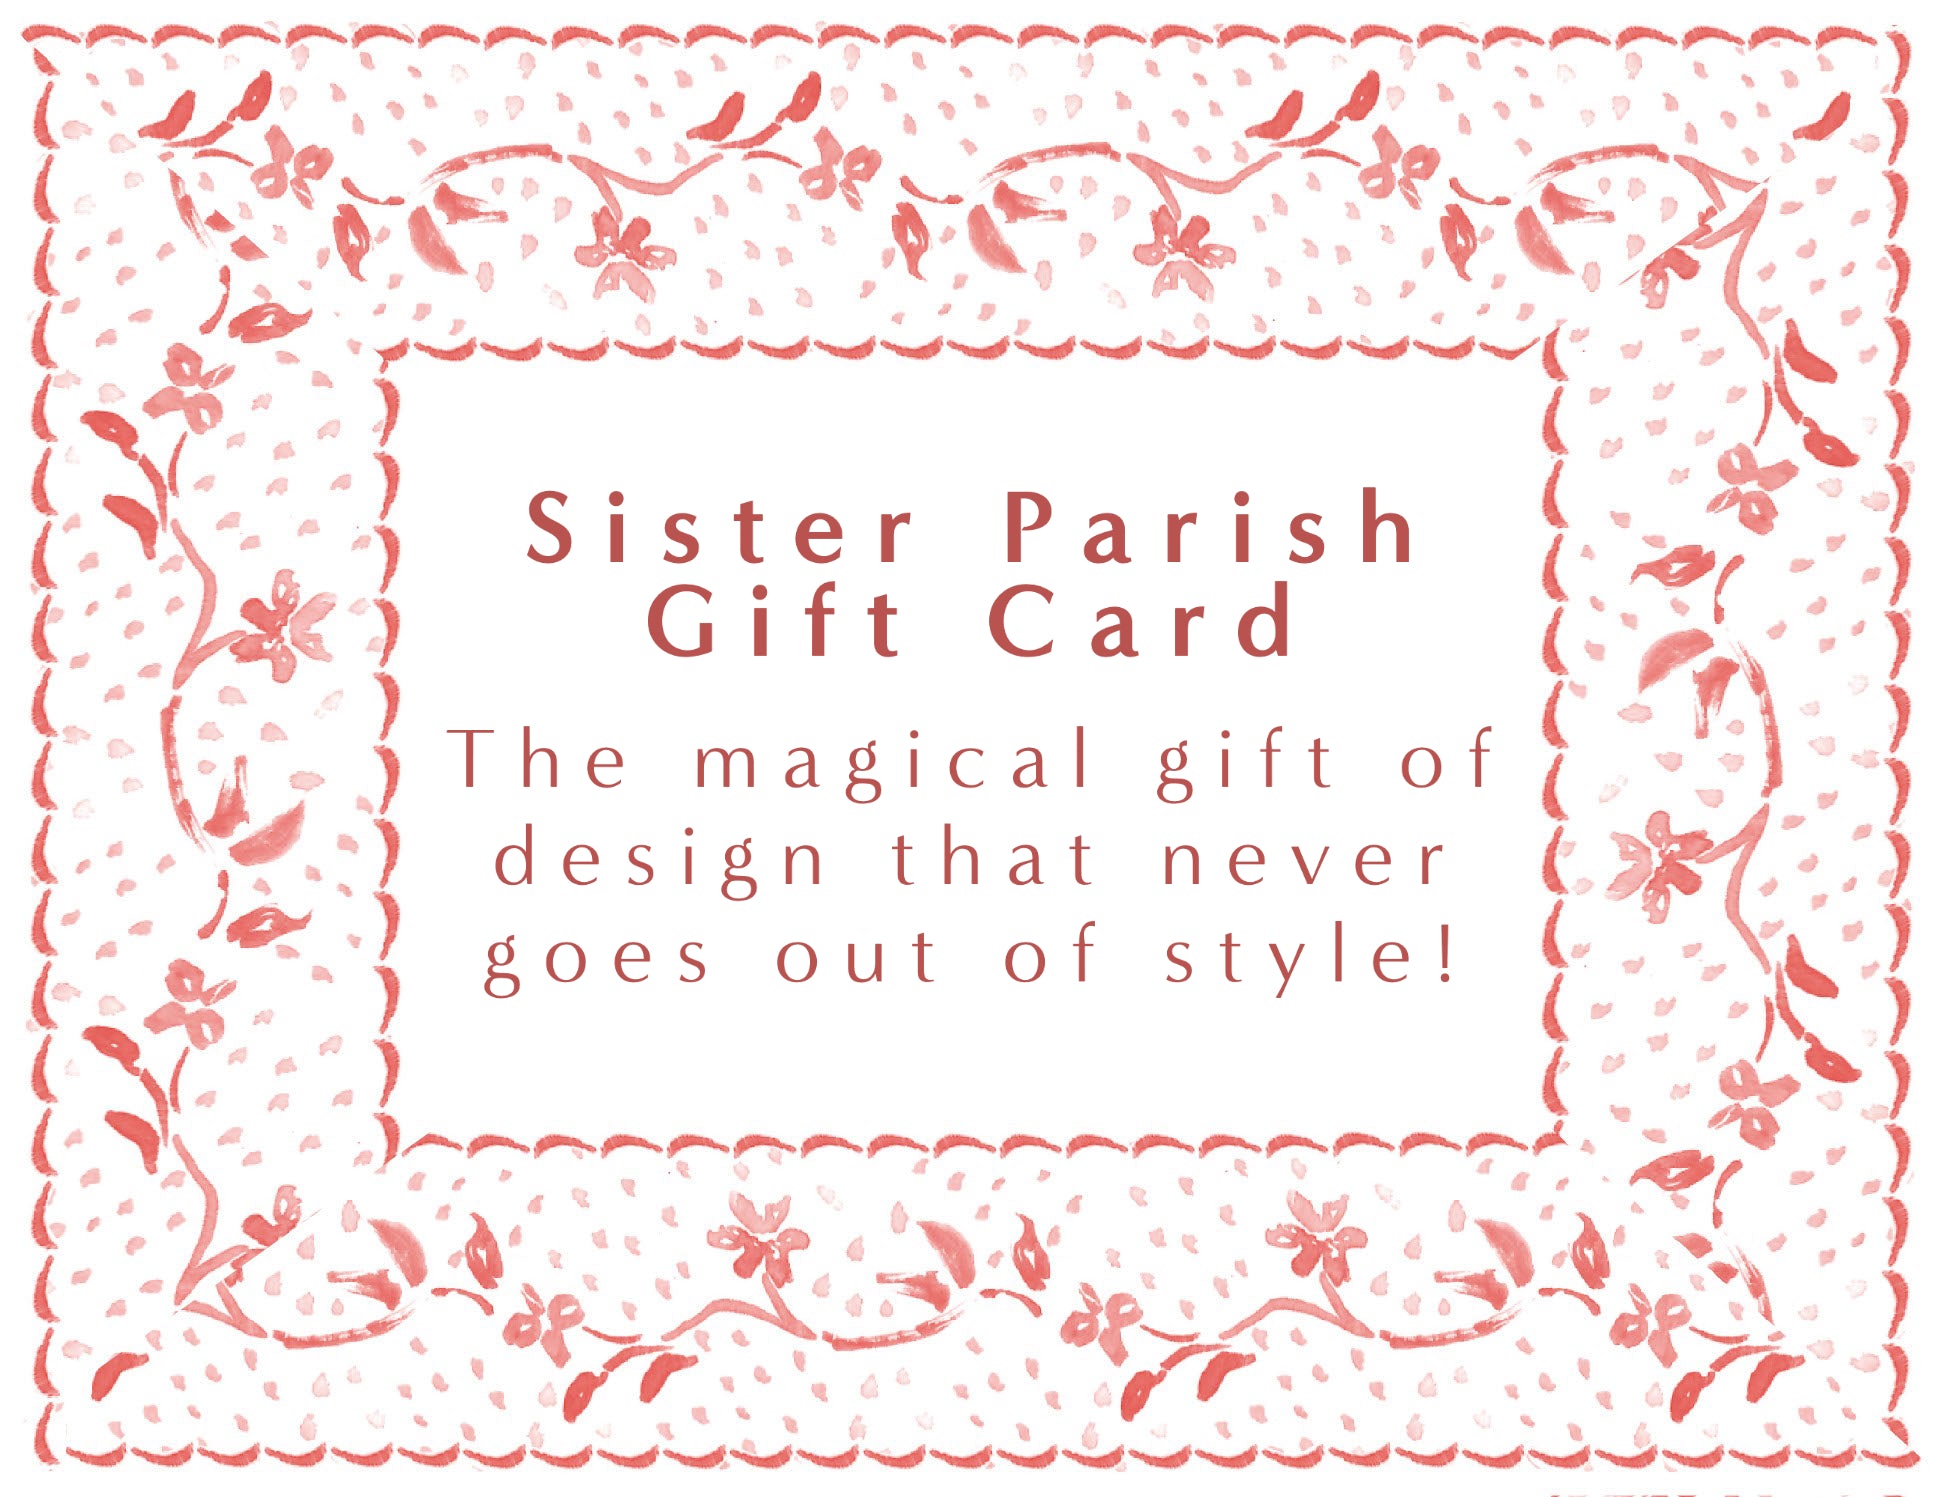 Sister Parish Digital Gift Card